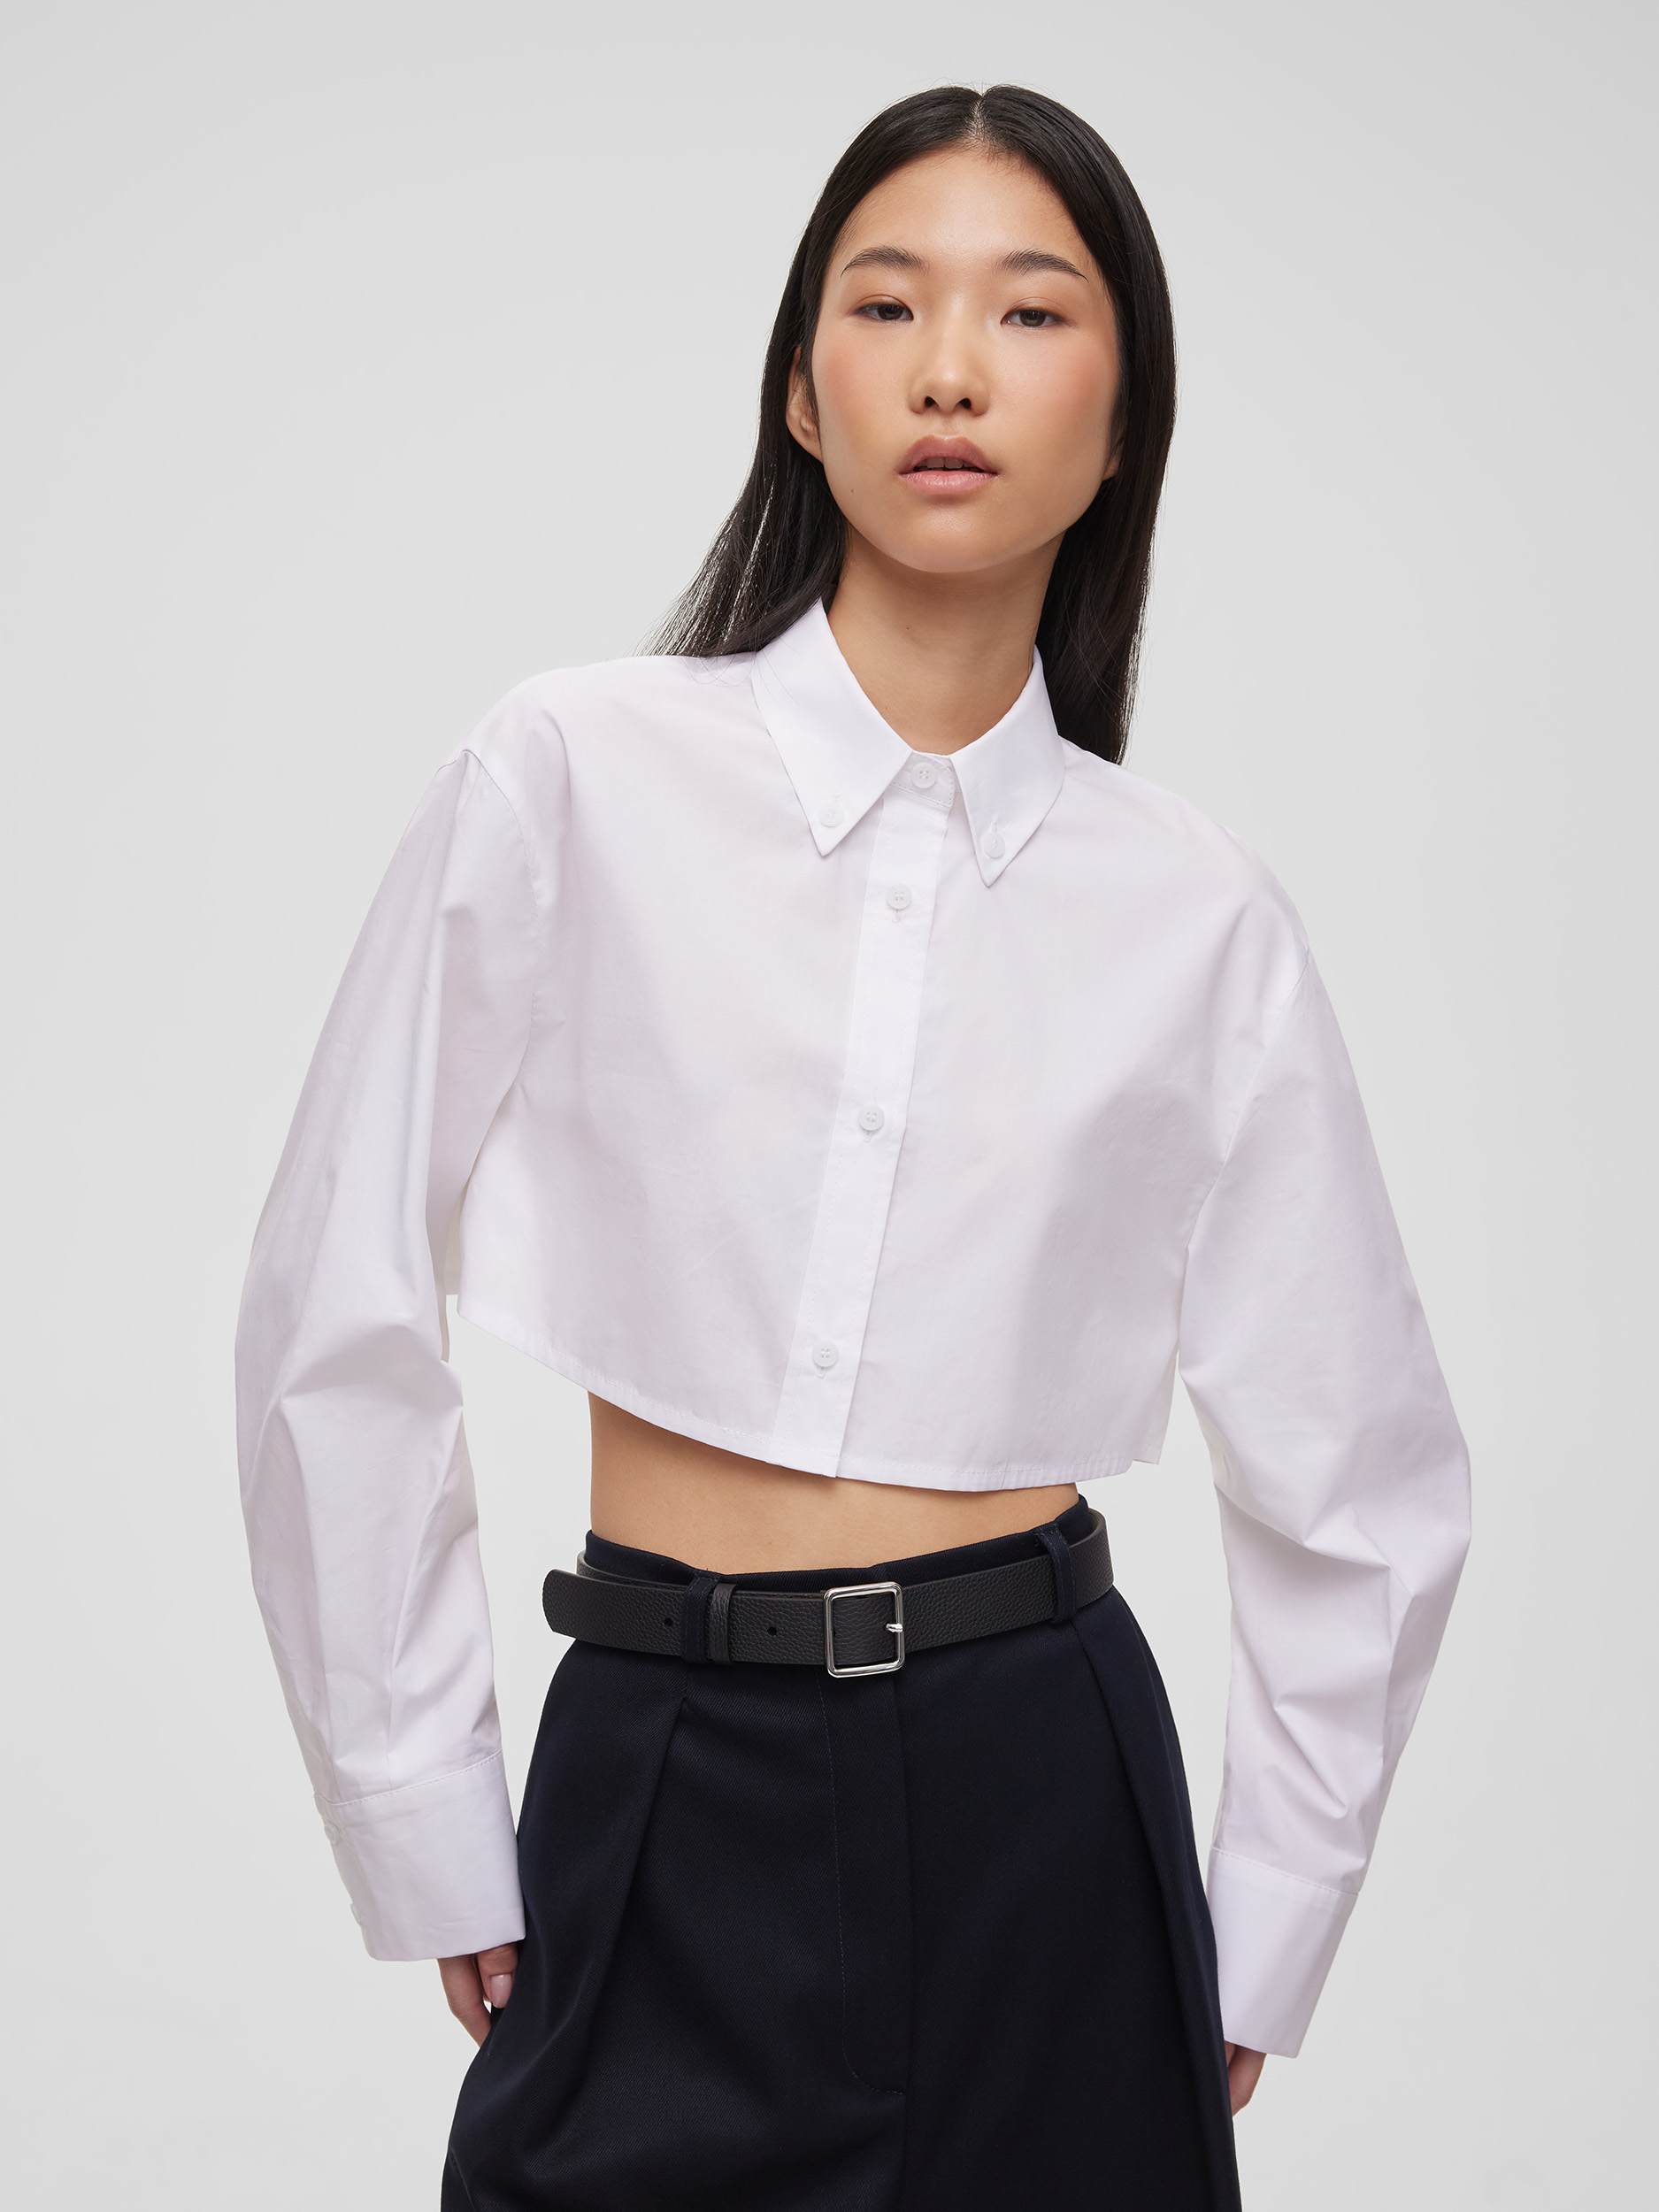 Рубашка женская короткая из хлопка, цвет – белый 27711